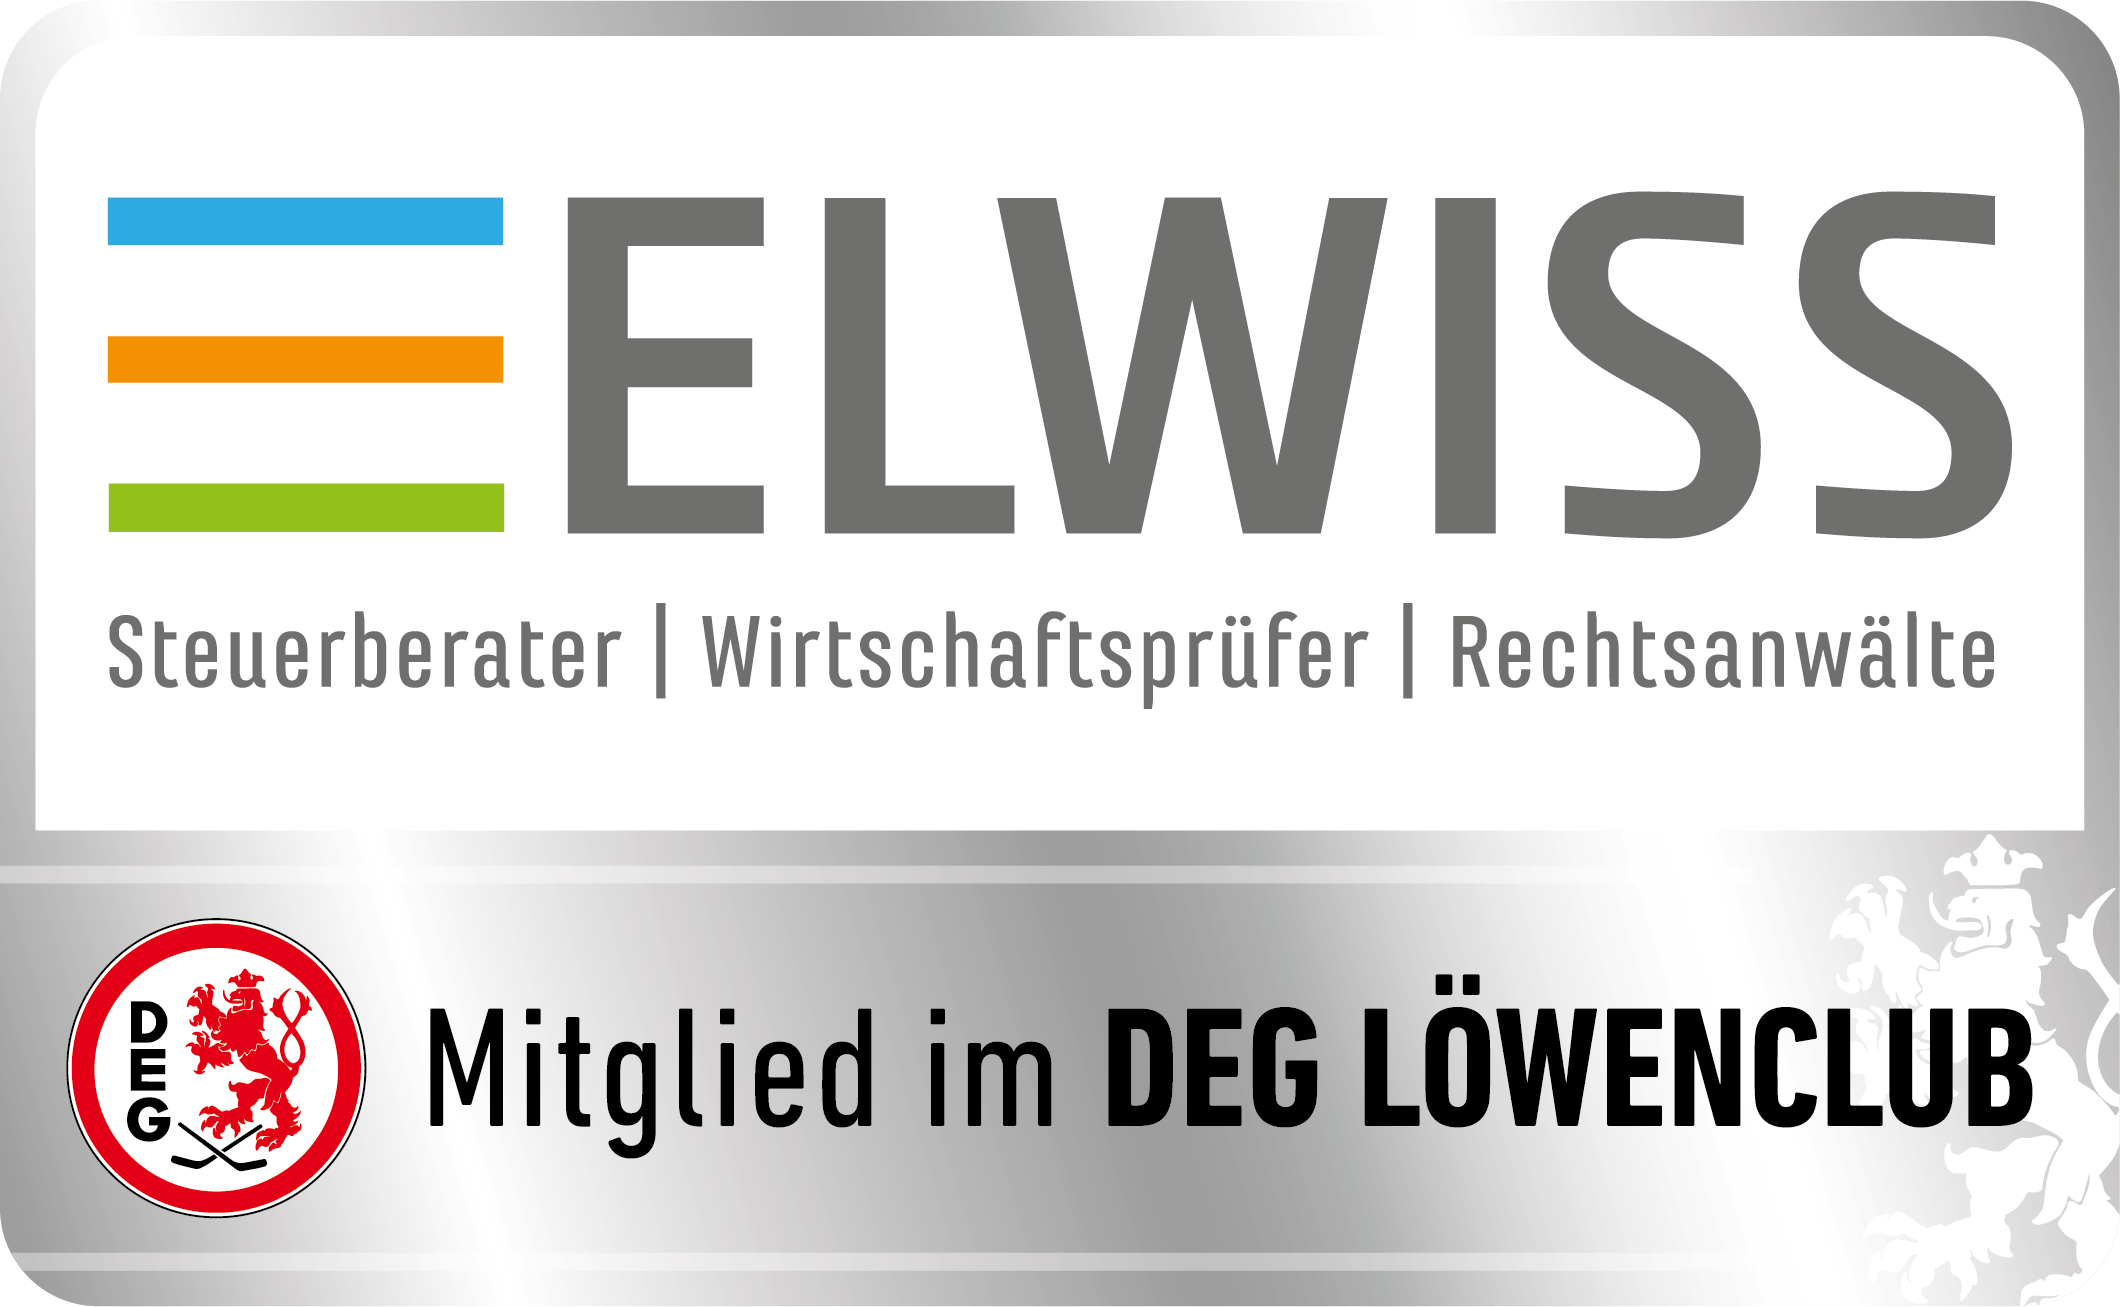 http://www.elwiss.de/